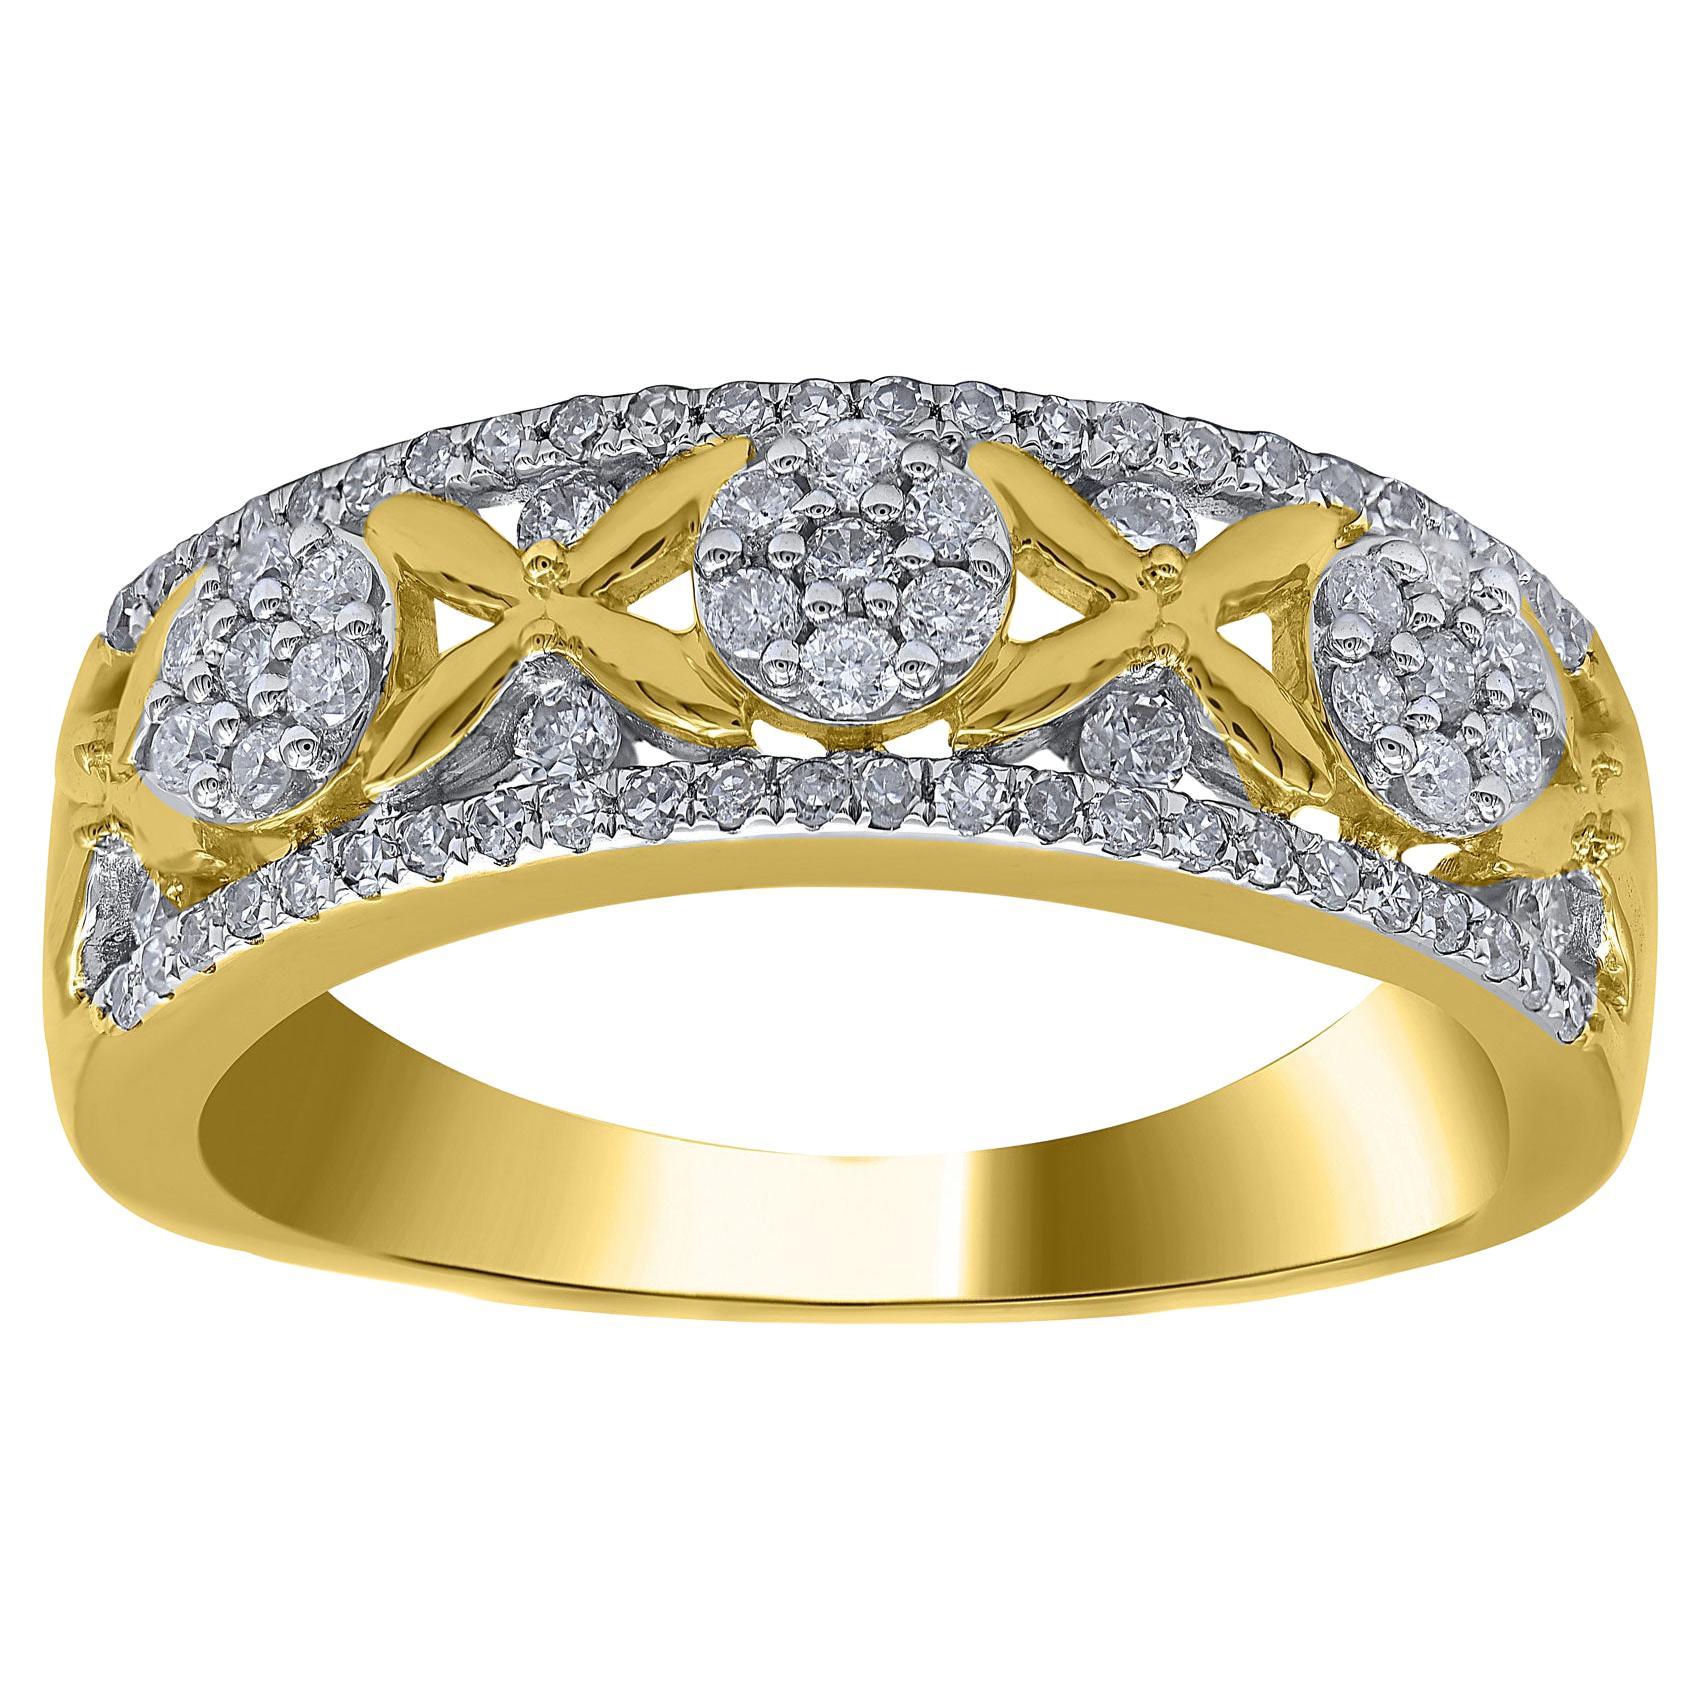 TJD 0.50 Carat Natural Round Diamond 14 Karat Yellow Gold Wedding Band Ring